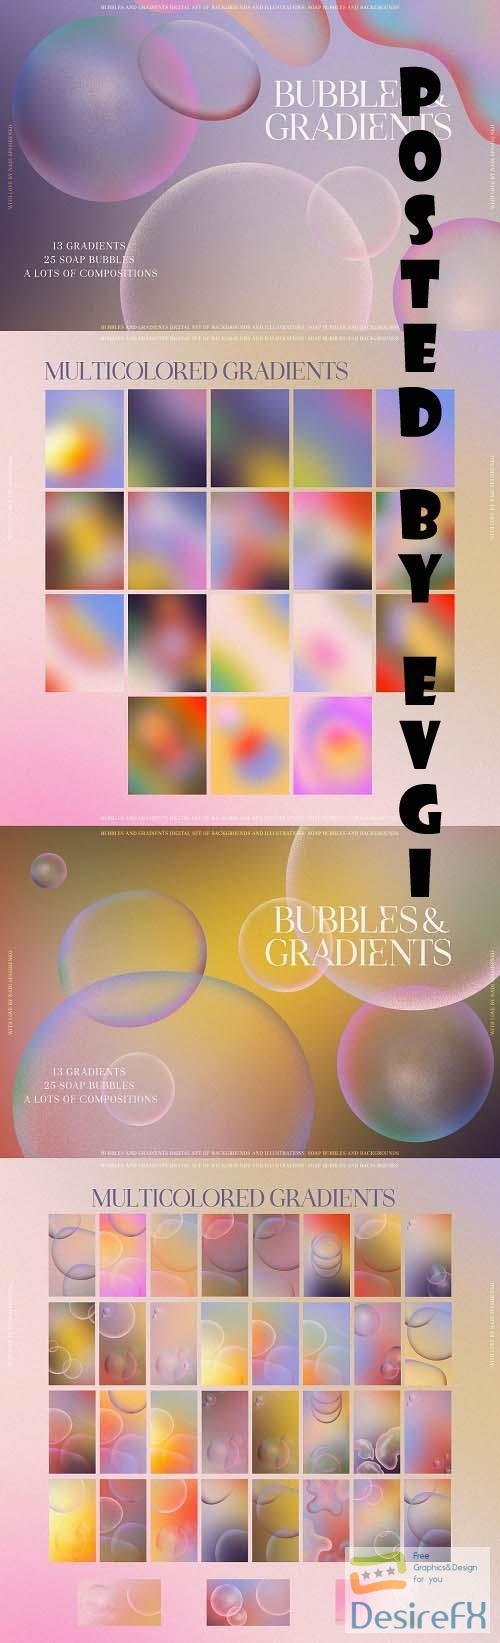 Bubbles & Colorful Gradients - 6729818